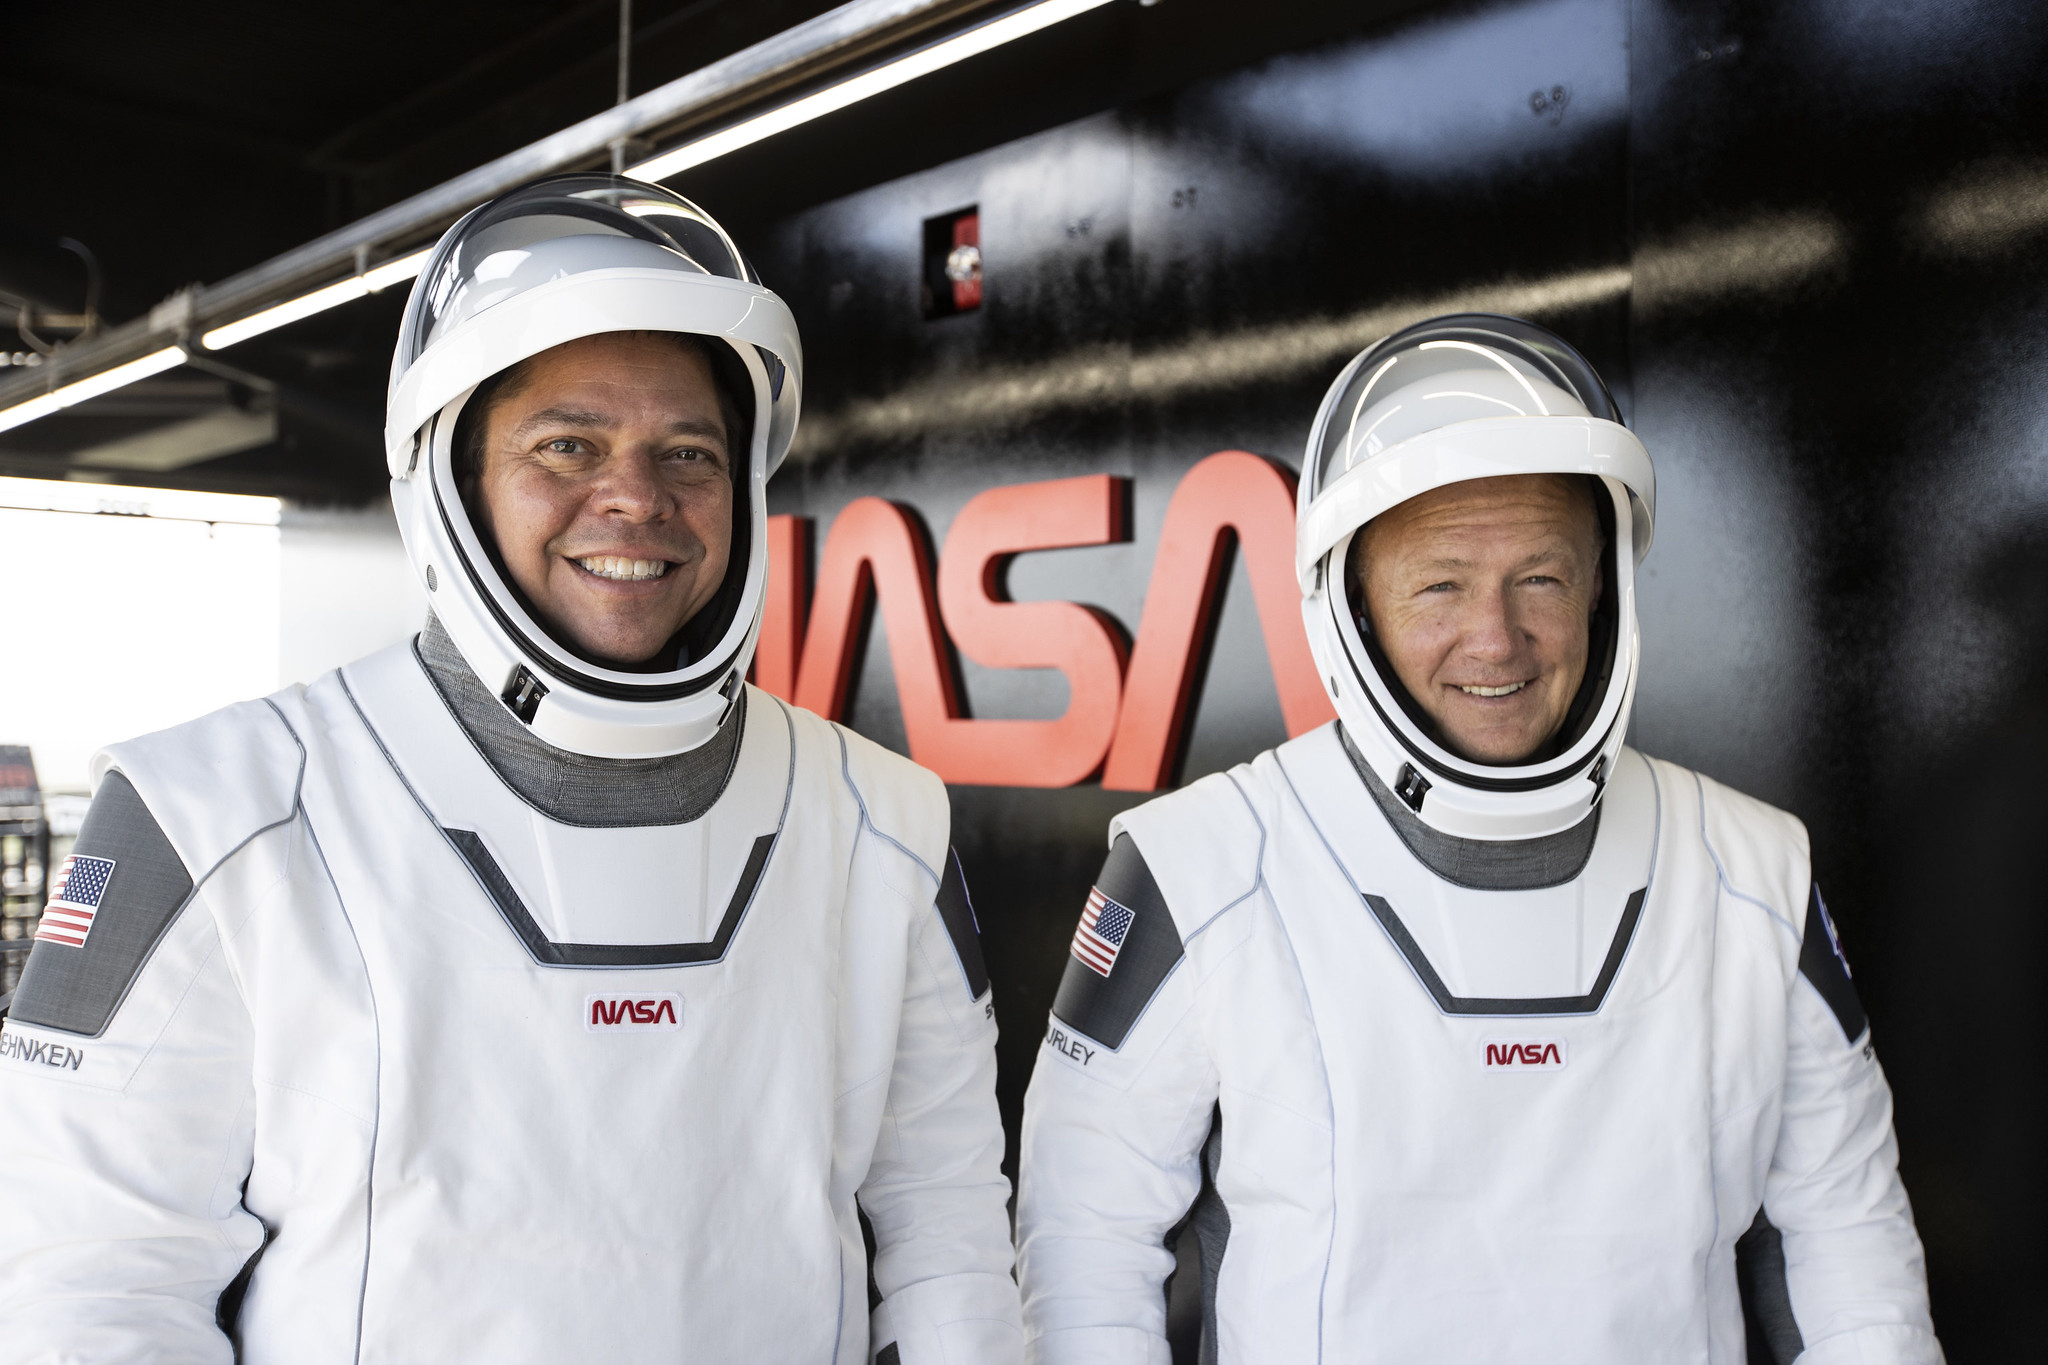 Spacex уперше відправить астронавтів до мкс: усе про історичний запуск